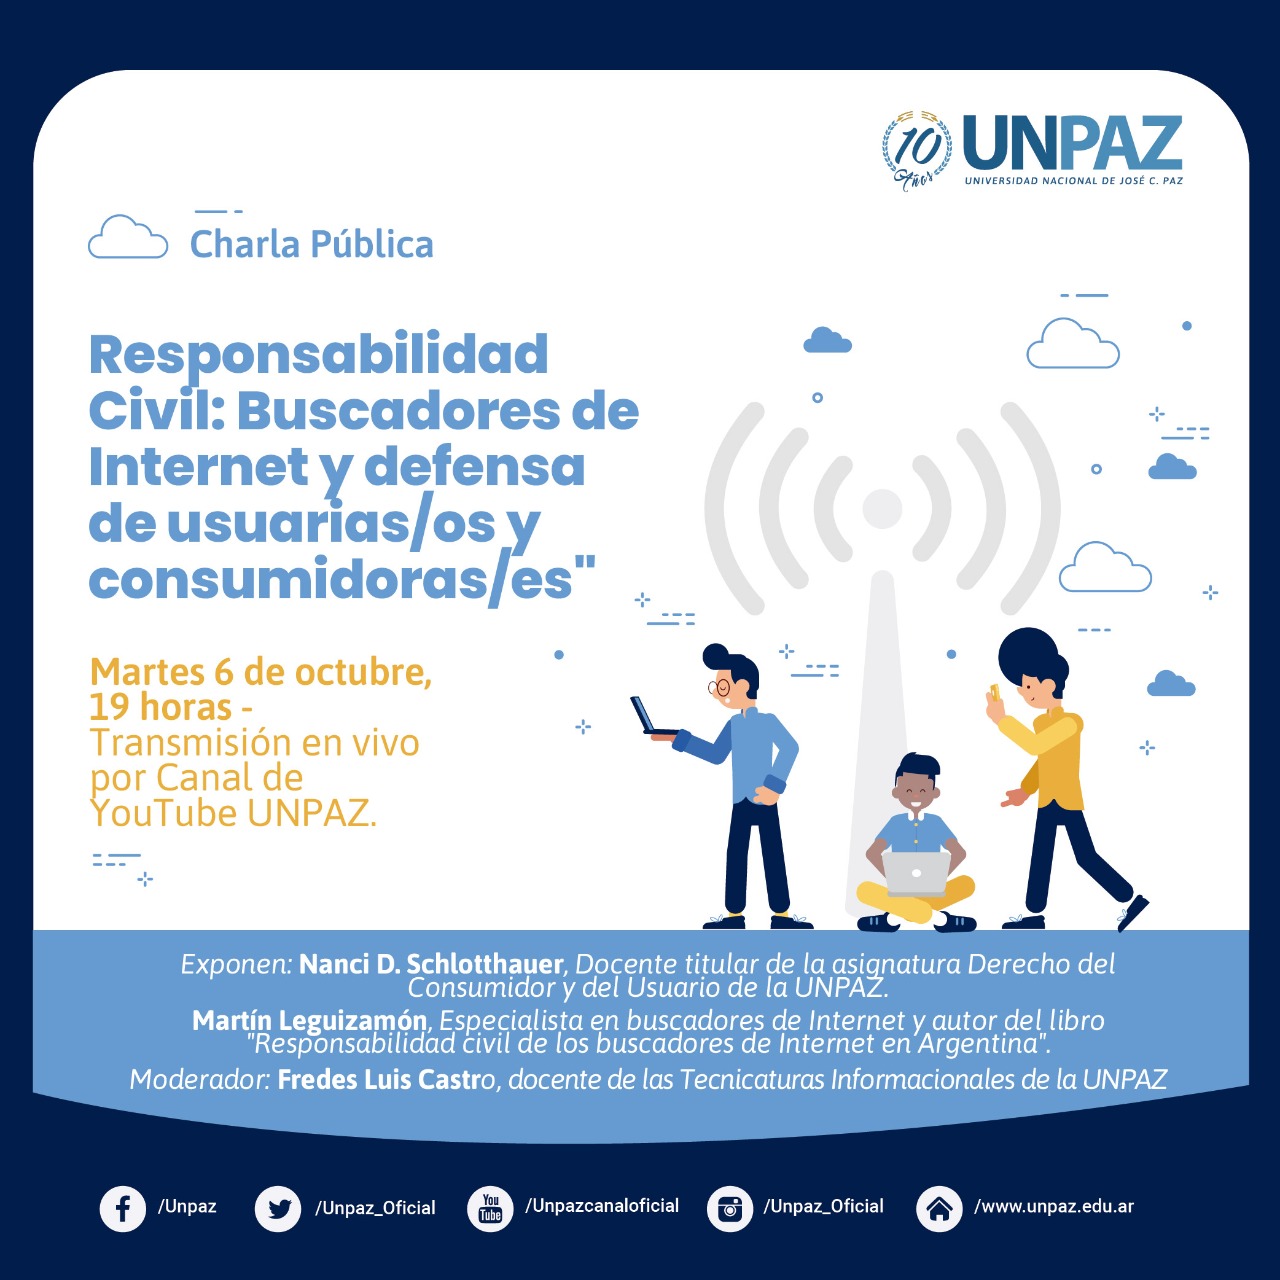 Charla pública. "Responsabilidad Civil: Buscadores de Internet y defensa de usuarias/os y consumidoras/es"